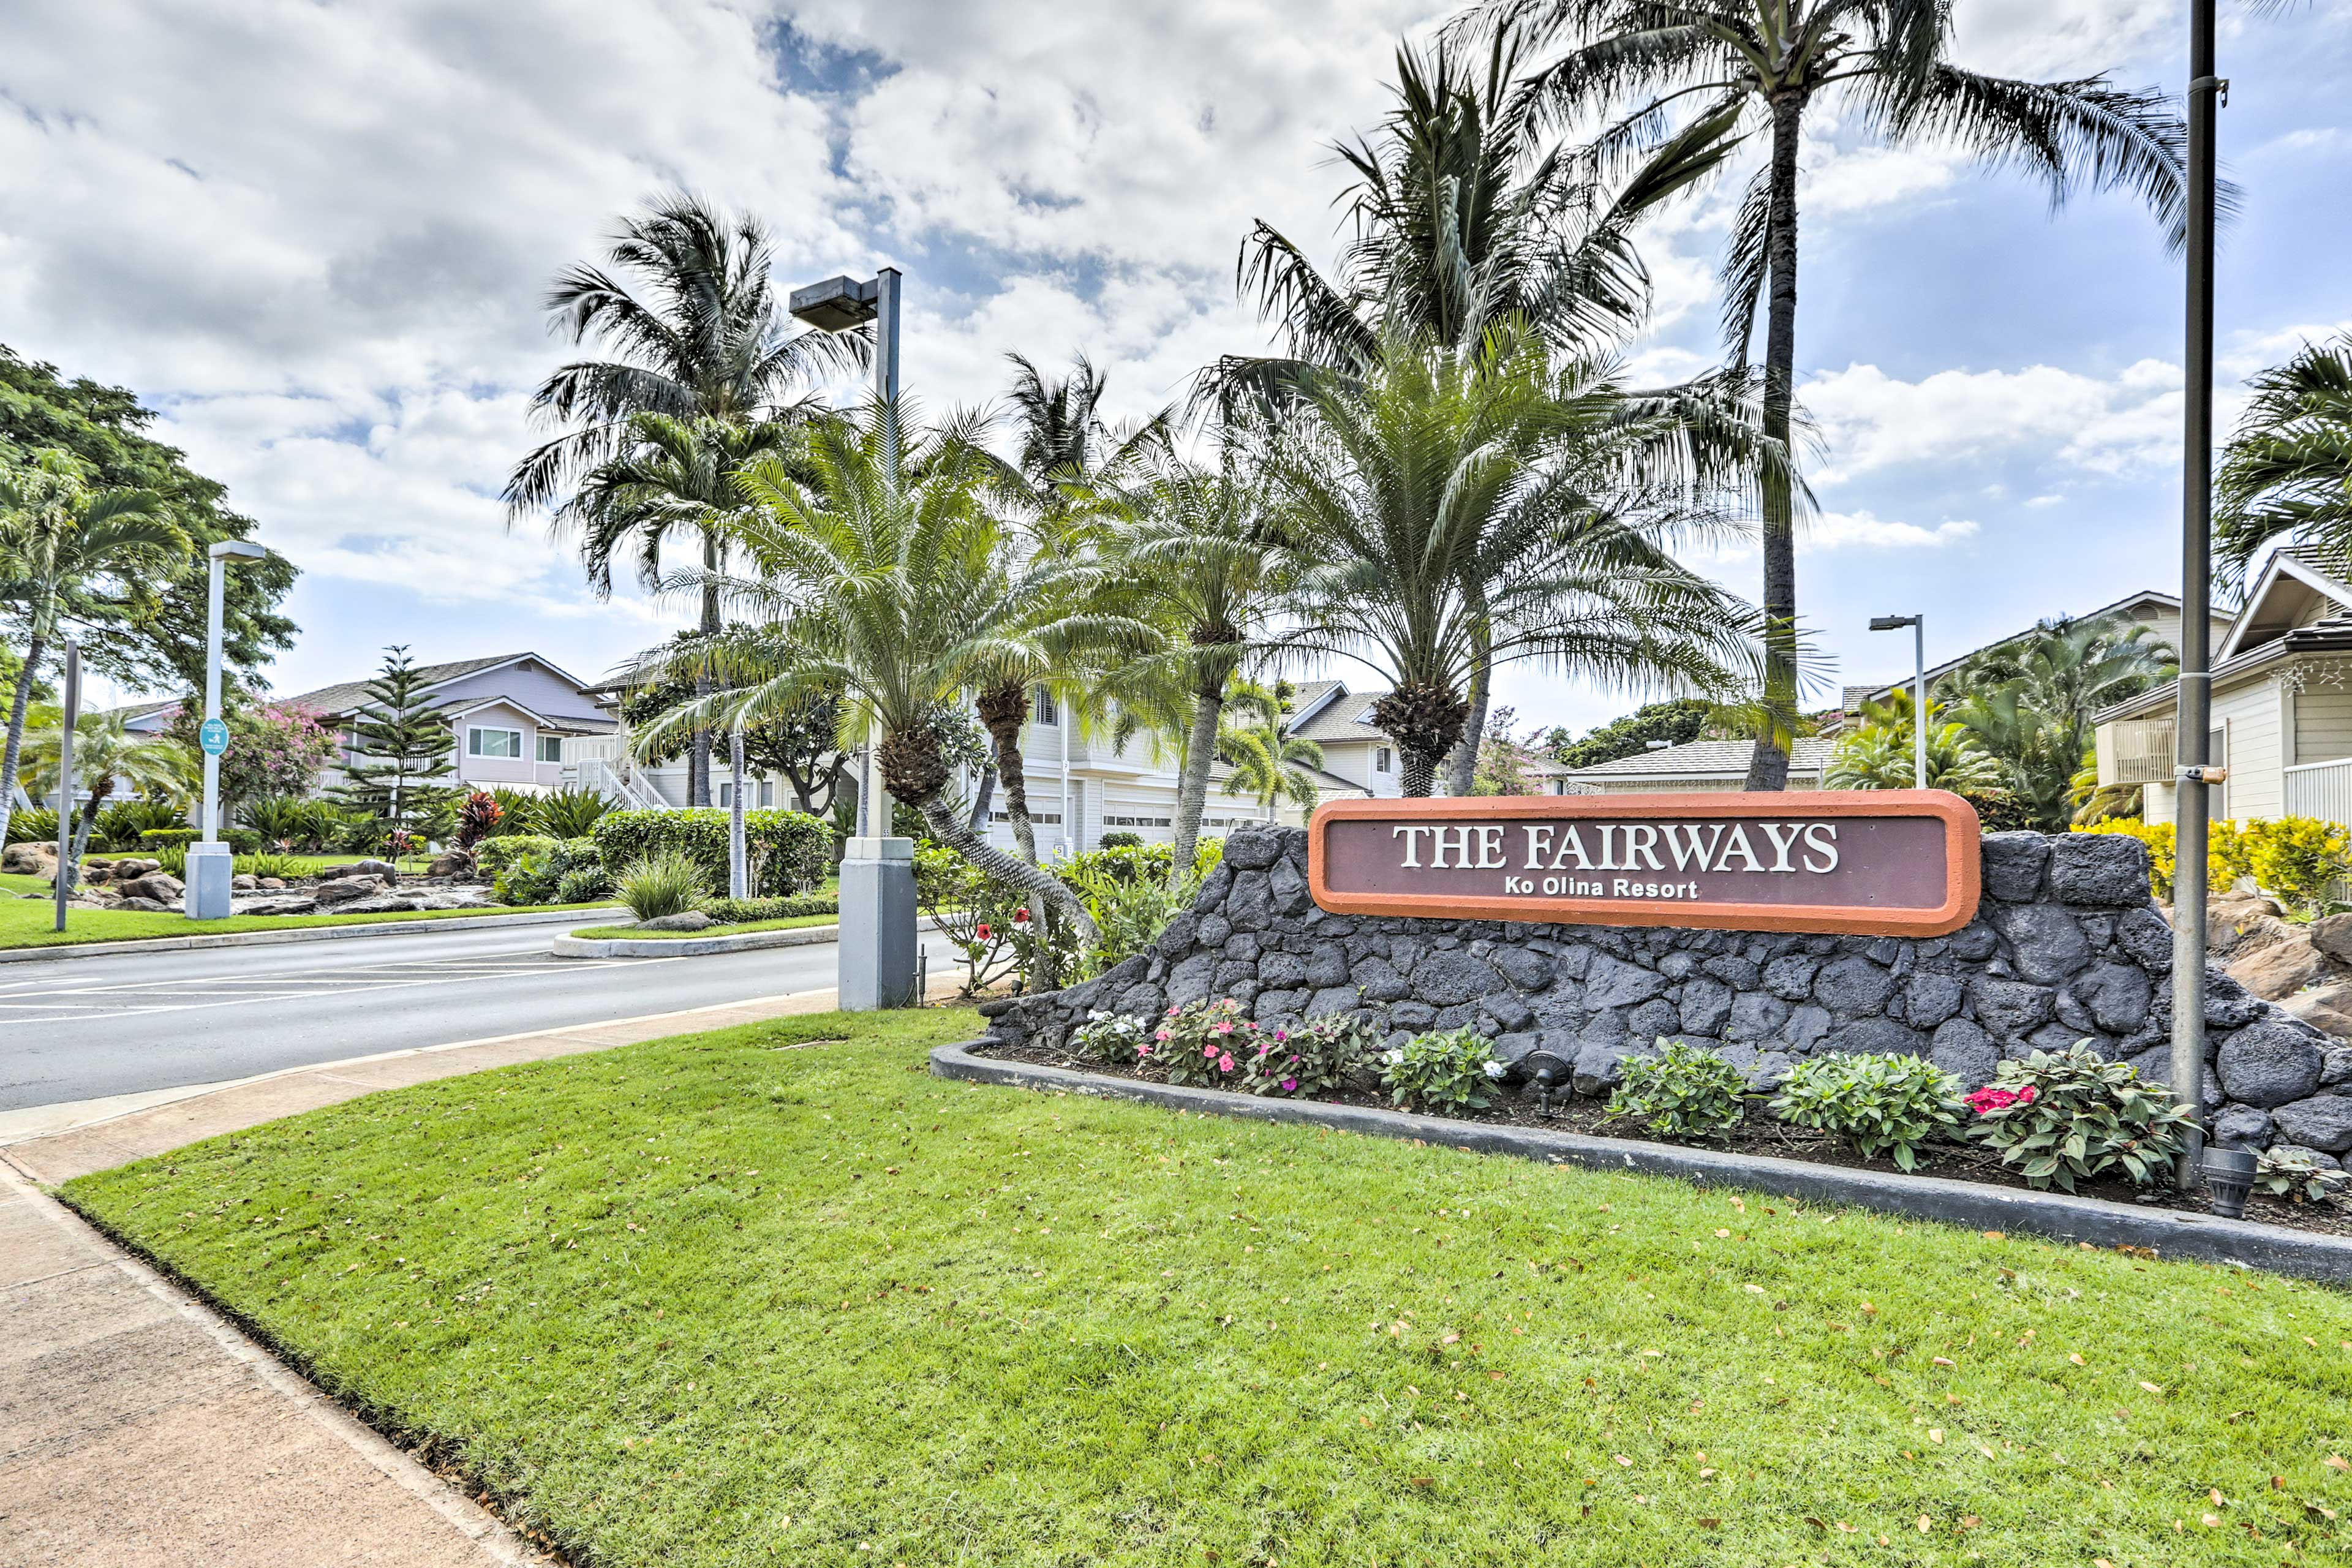 The Fairways Ko Olina Resort